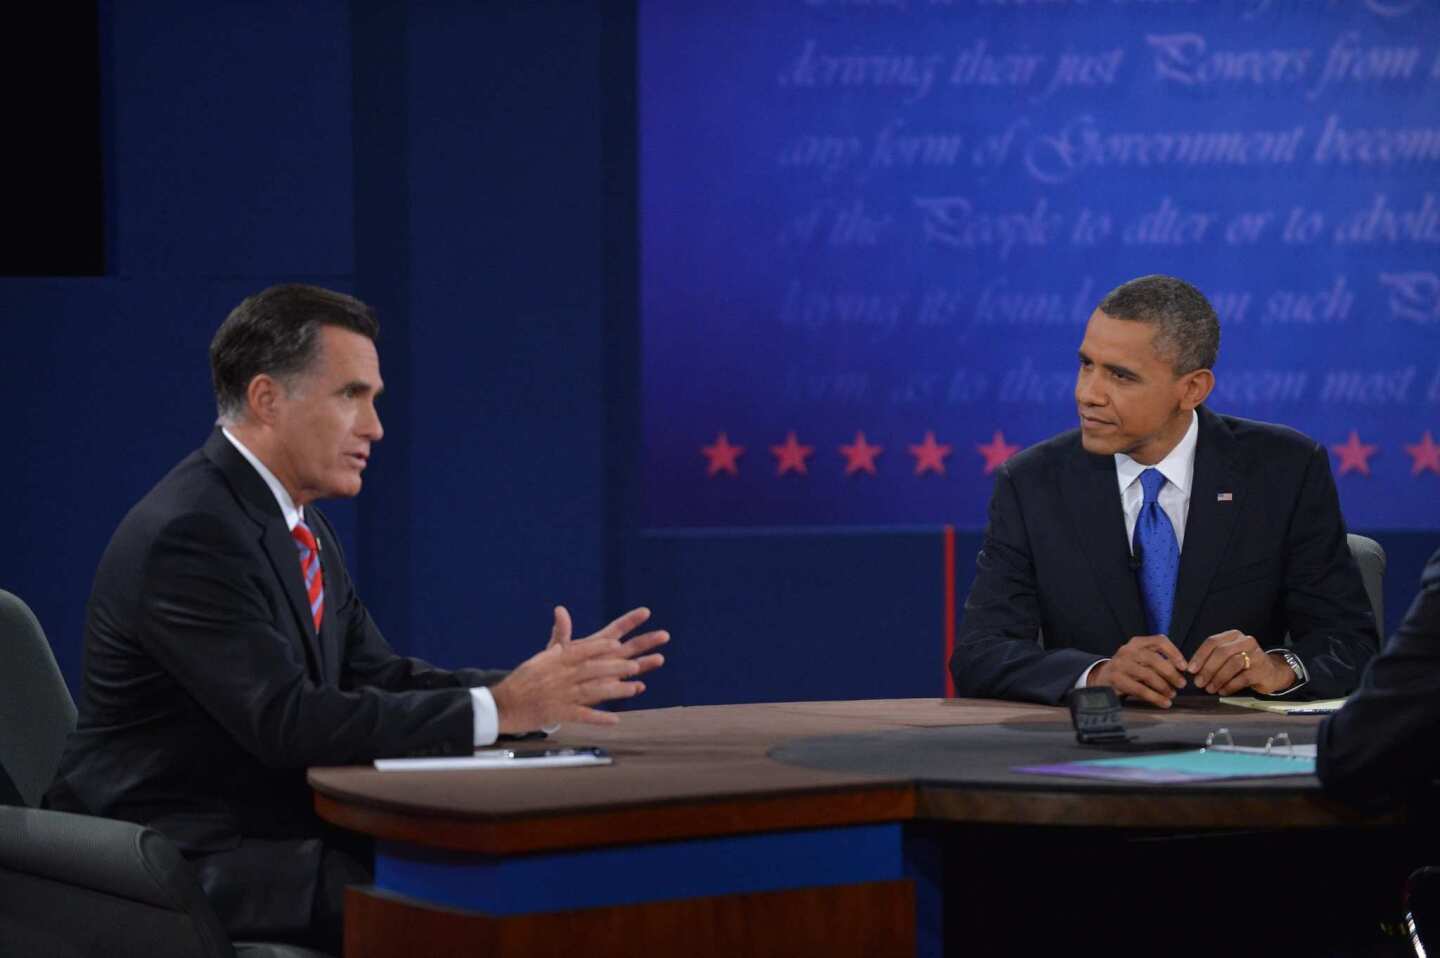 Mitt Romney and President Obama